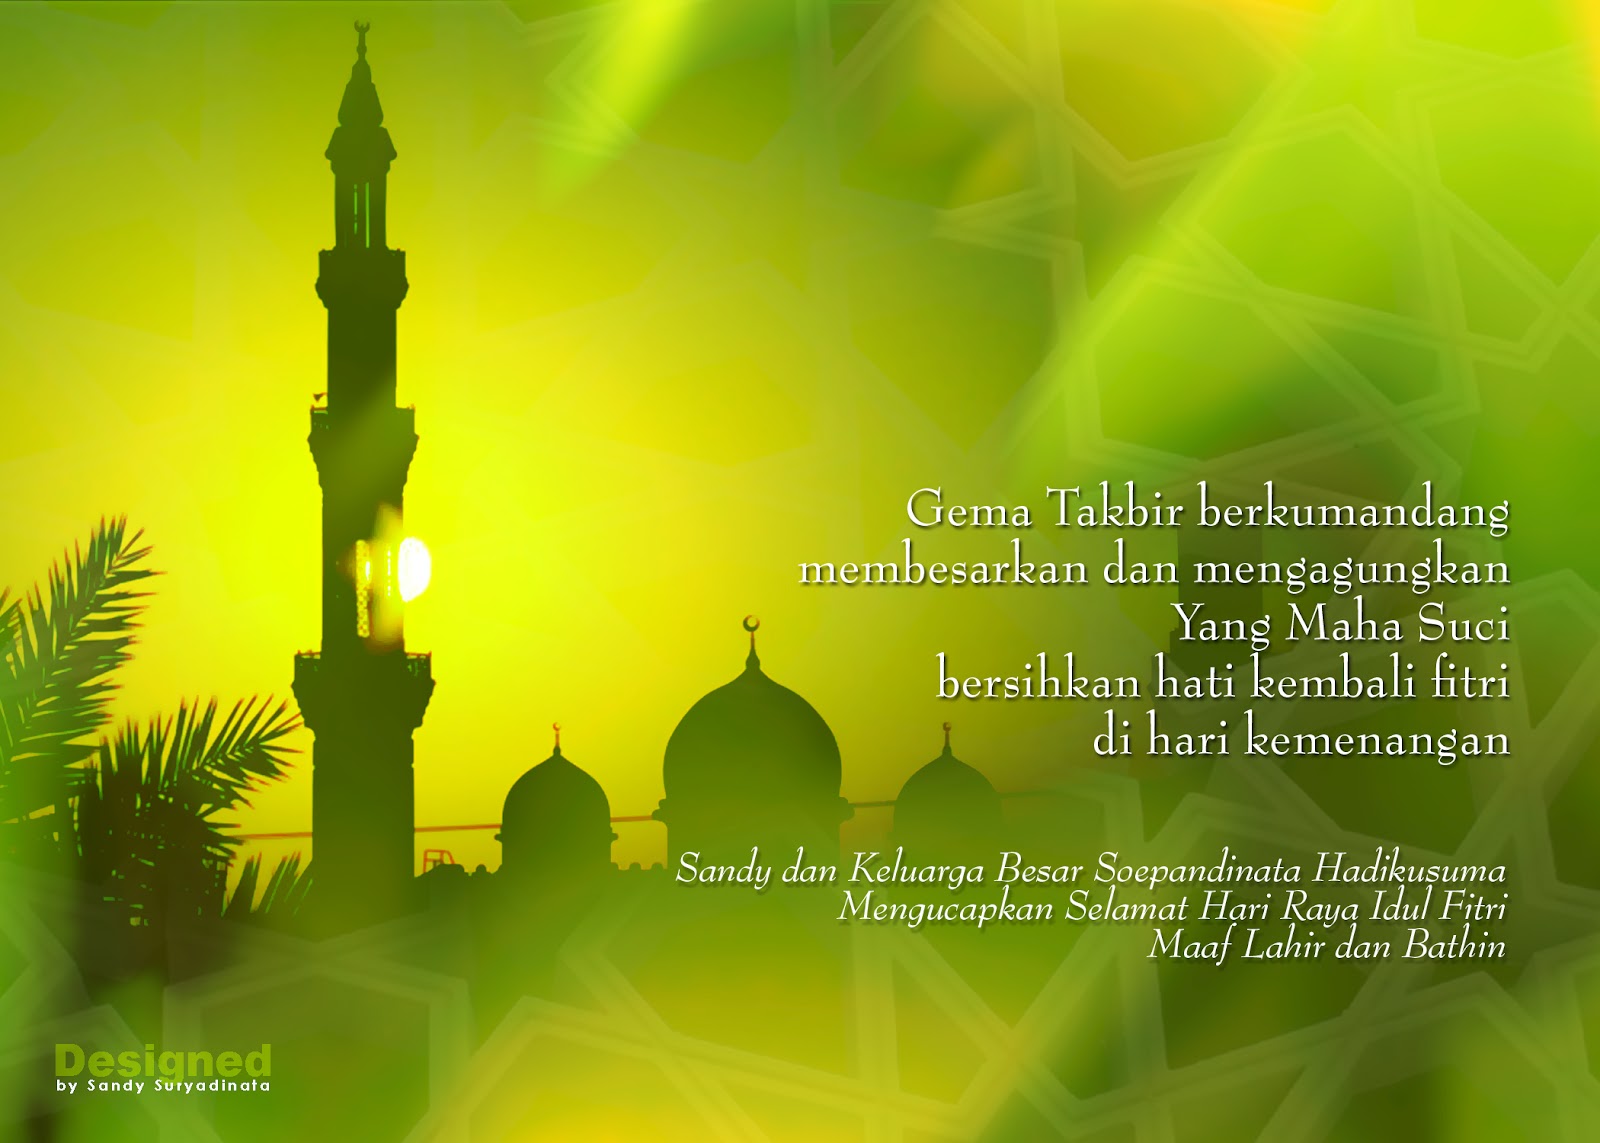  Gambar kartu ucapan  Ramadhan 2012 Terlengkap Kumpulan 